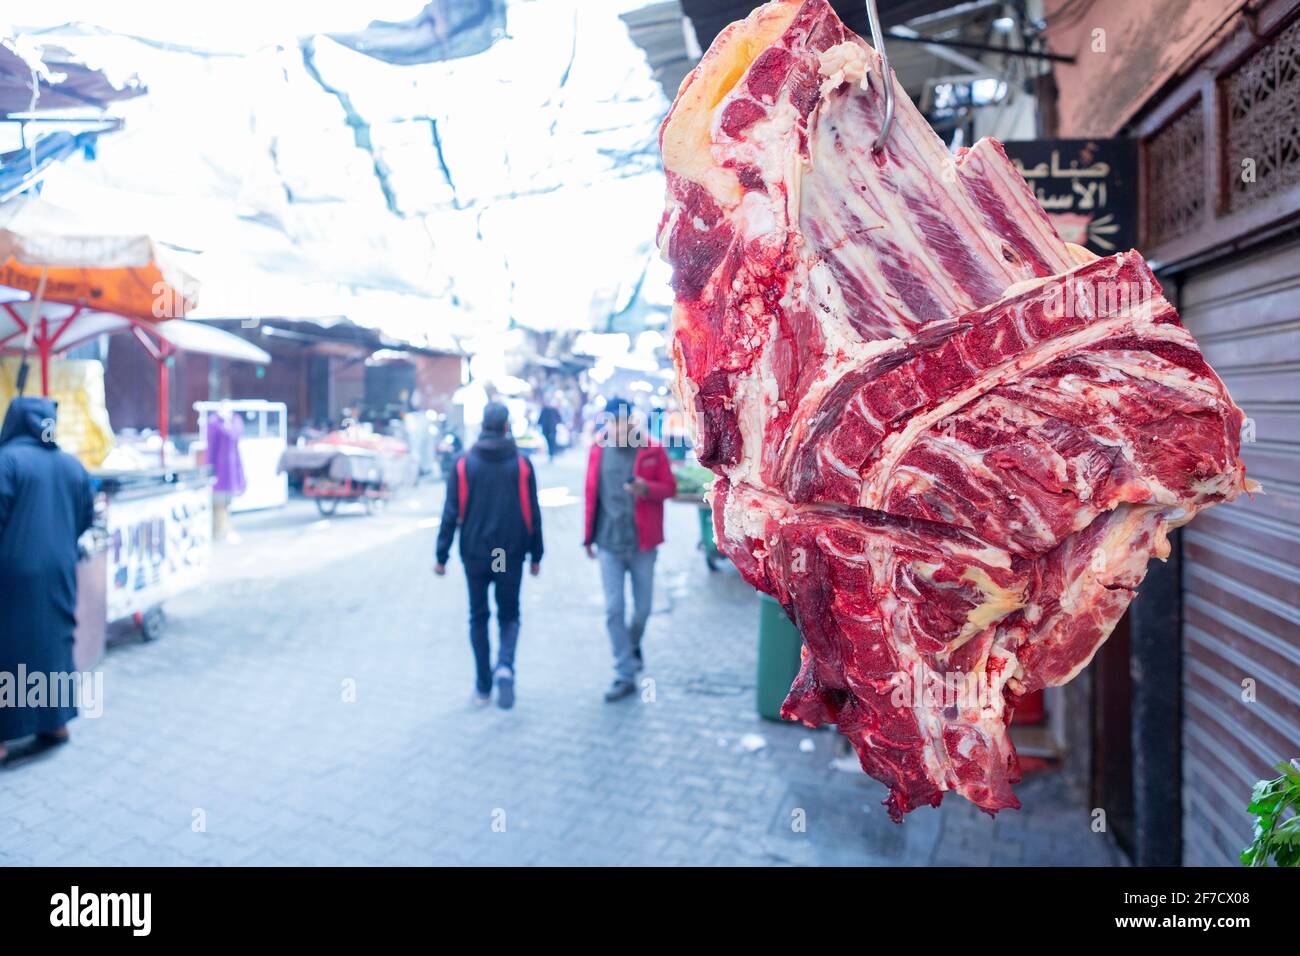 Ein Stück Fleisch hängt´s einem Metzgerladen in der Medina von Marrakesch, Marokko Stockfoto